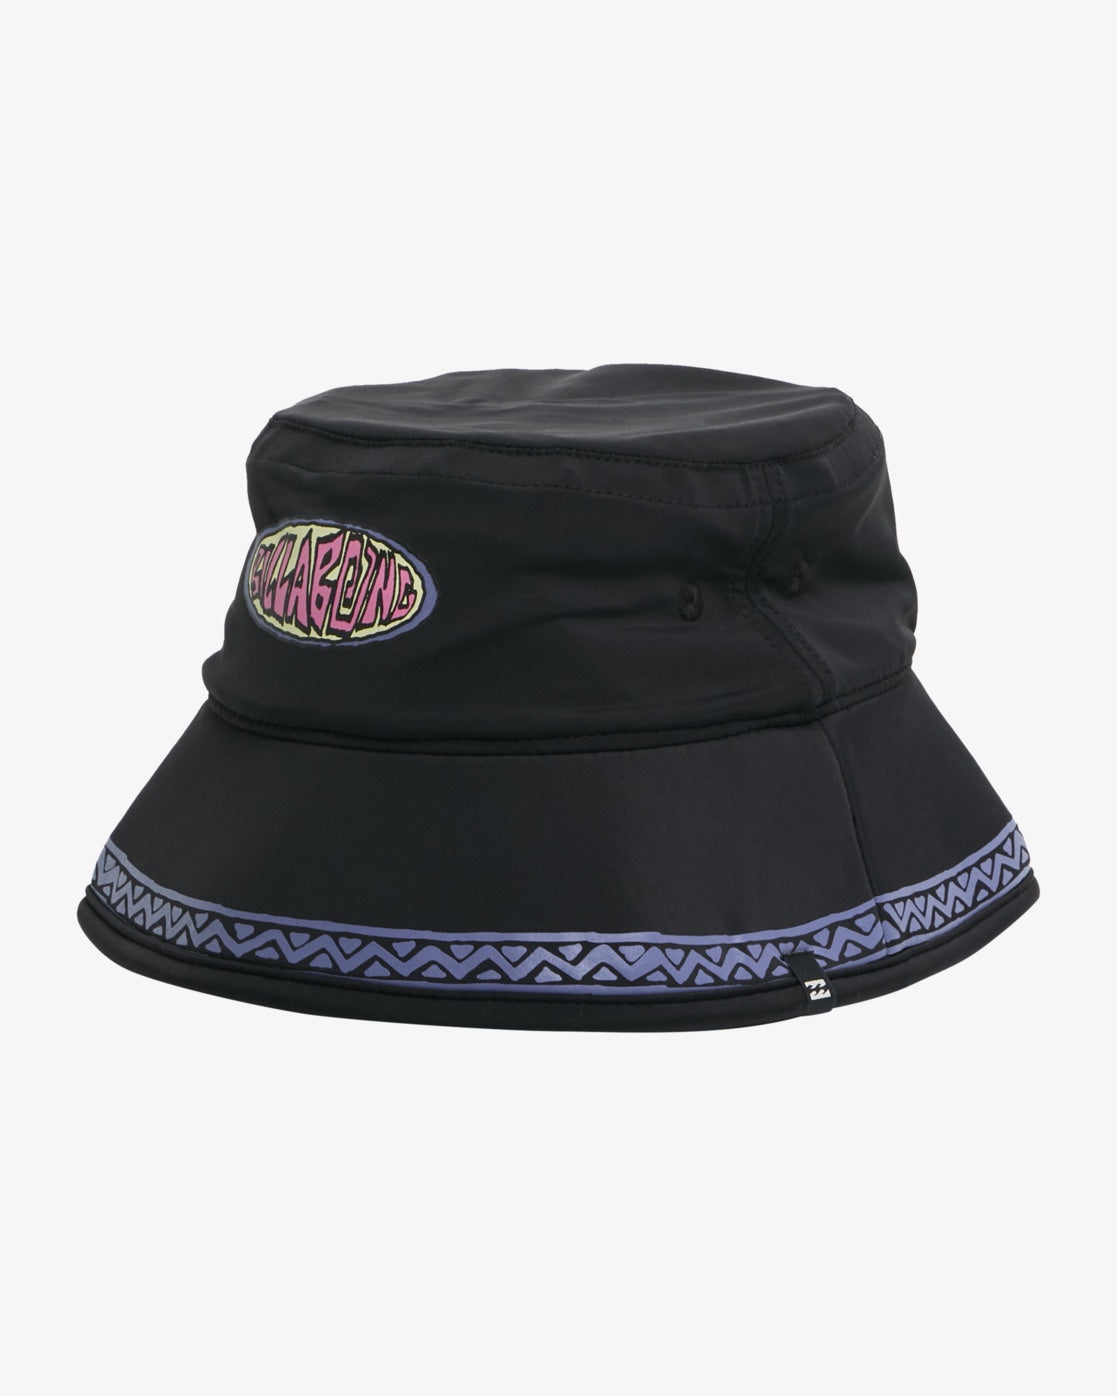 Groms Bucket Hat